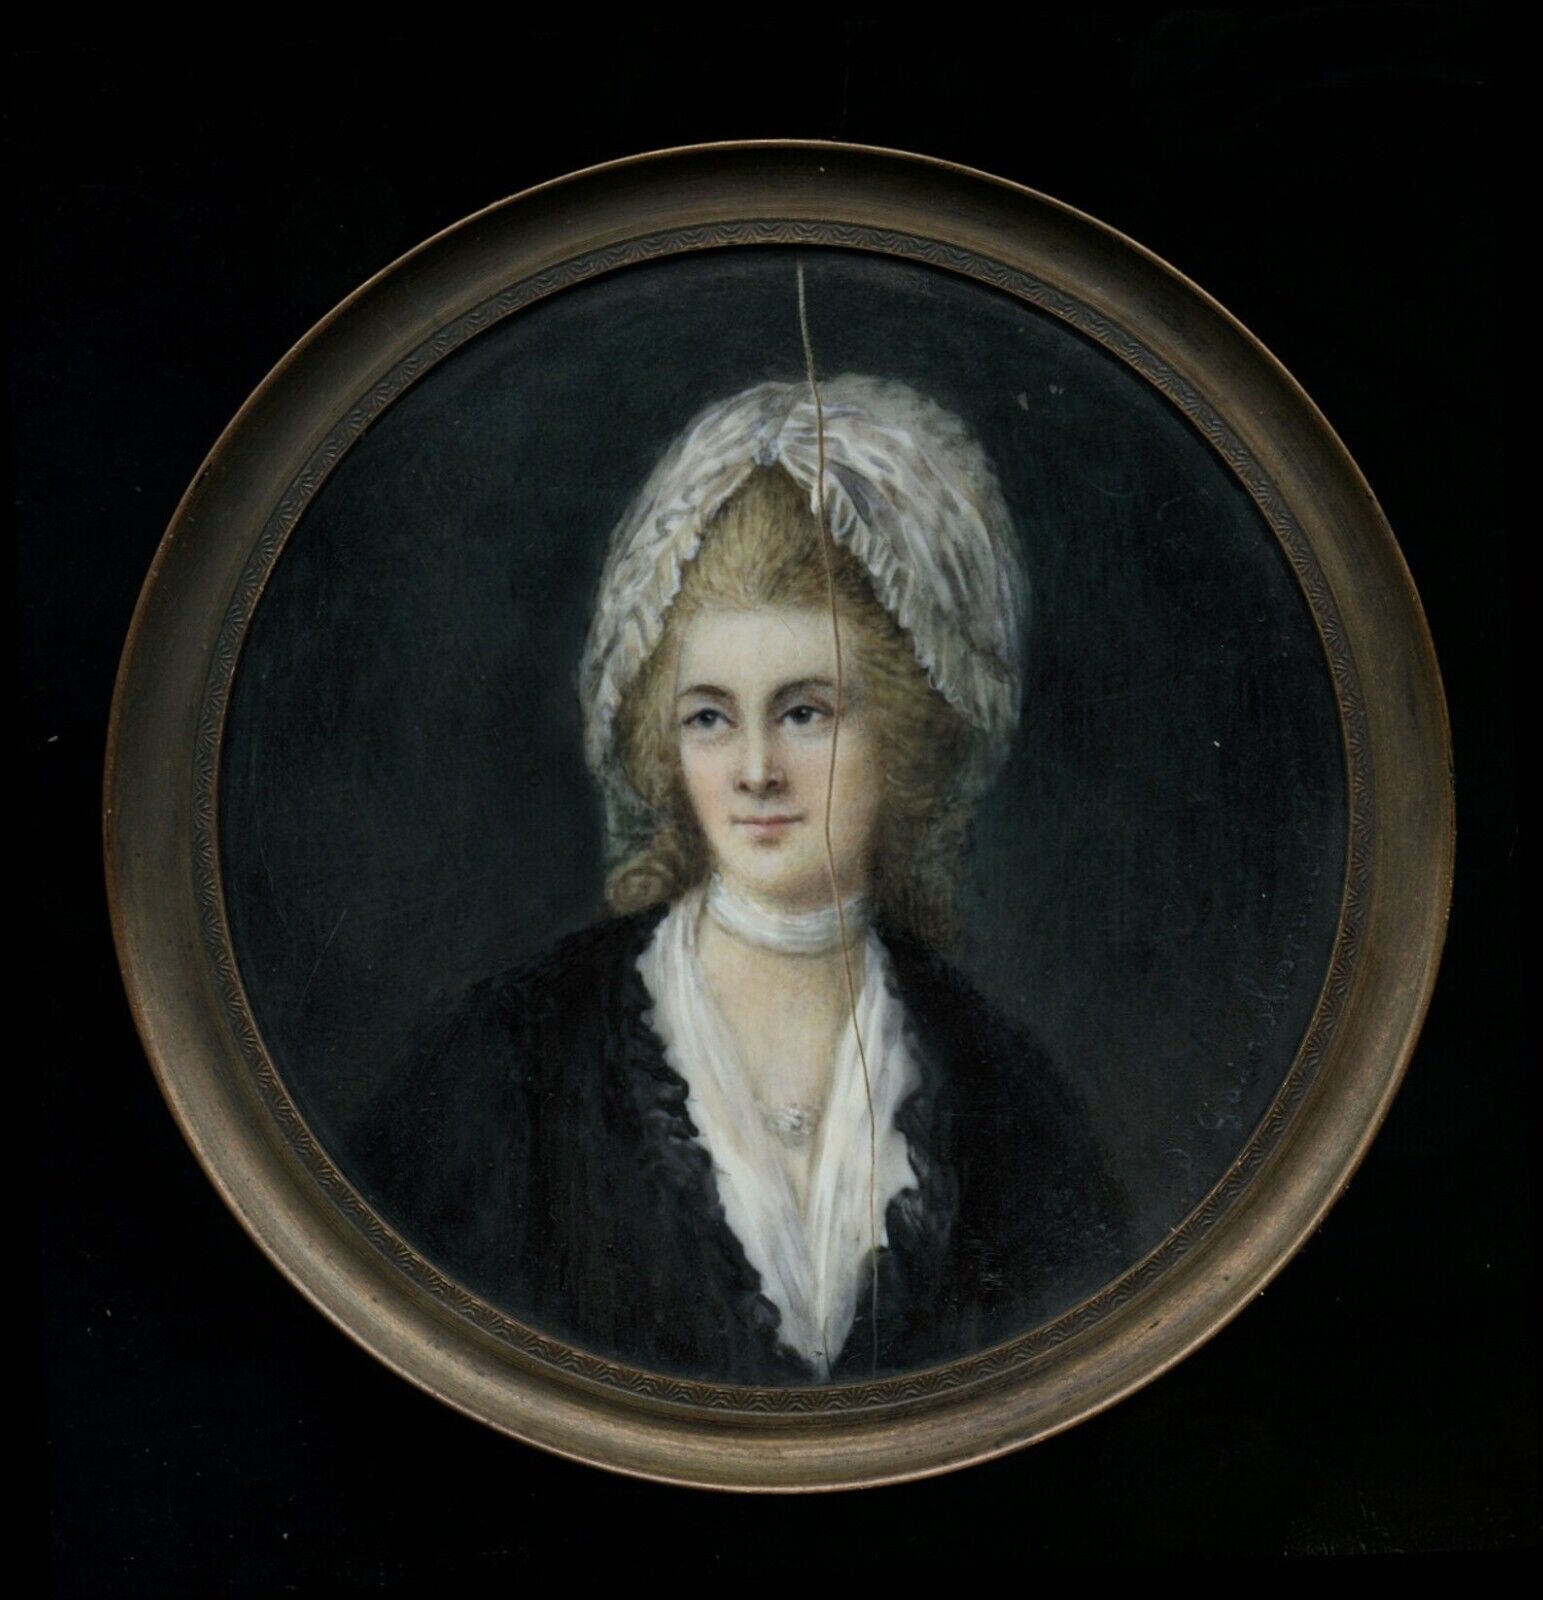 Antique Miniature Painting Portrait of a Woman - Signed Gainsborough